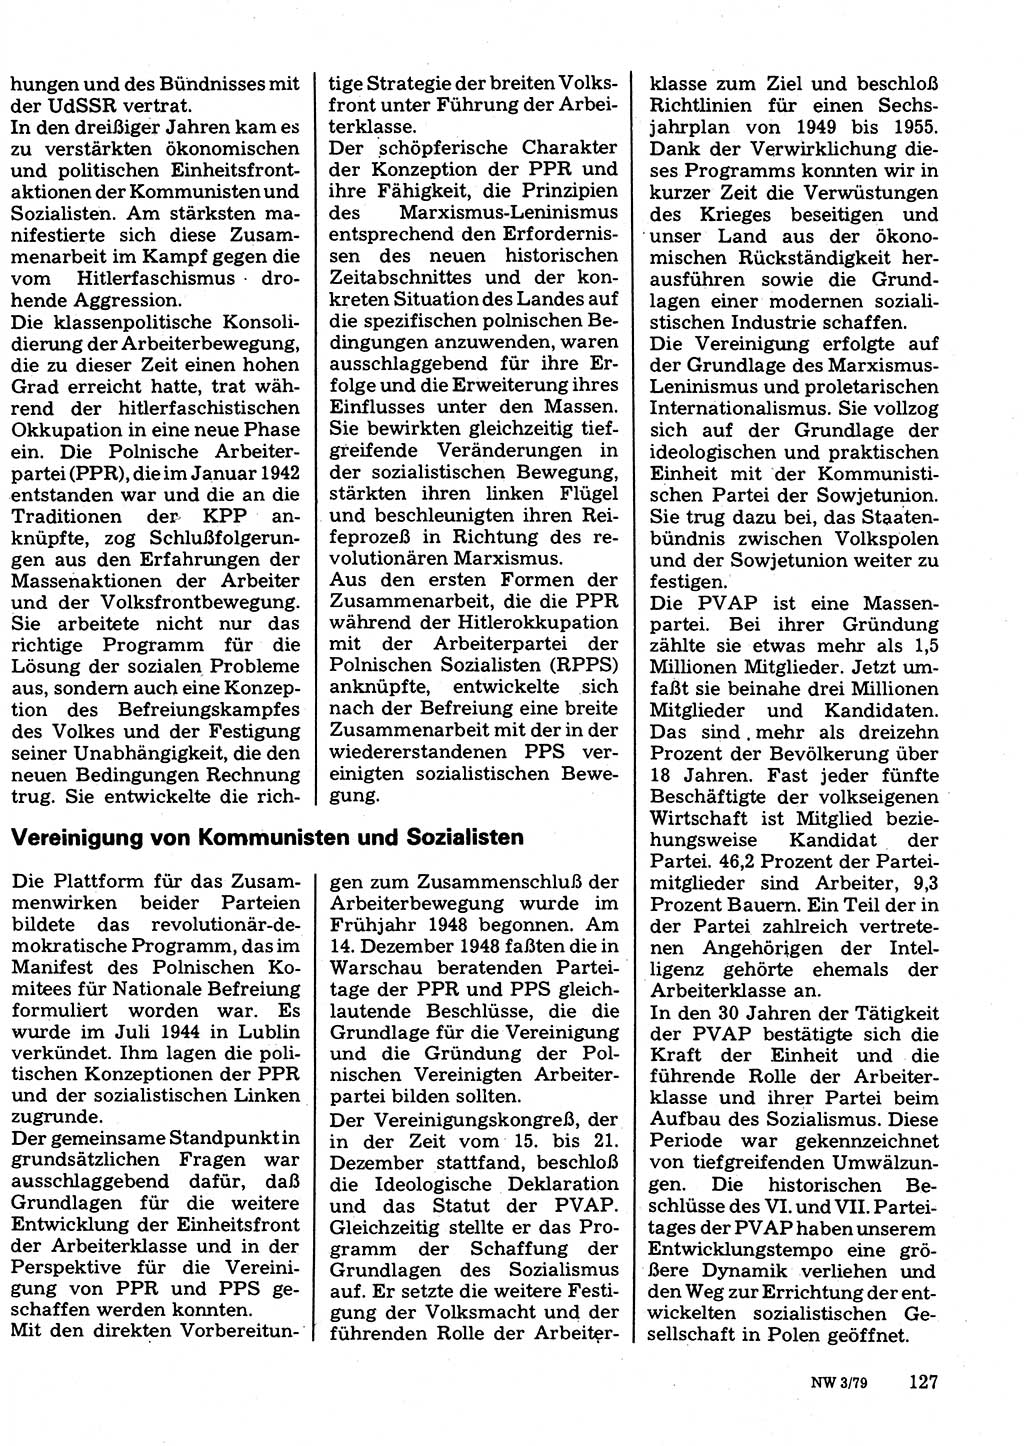 Neuer Weg (NW), Organ des Zentralkomitees (ZK) der SED (Sozialistische Einheitspartei Deutschlands) für Fragen des Parteilebens, 34. Jahrgang [Deutsche Demokratische Republik (DDR)] 1979, Seite 127 (NW ZK SED DDR 1979, S. 127)